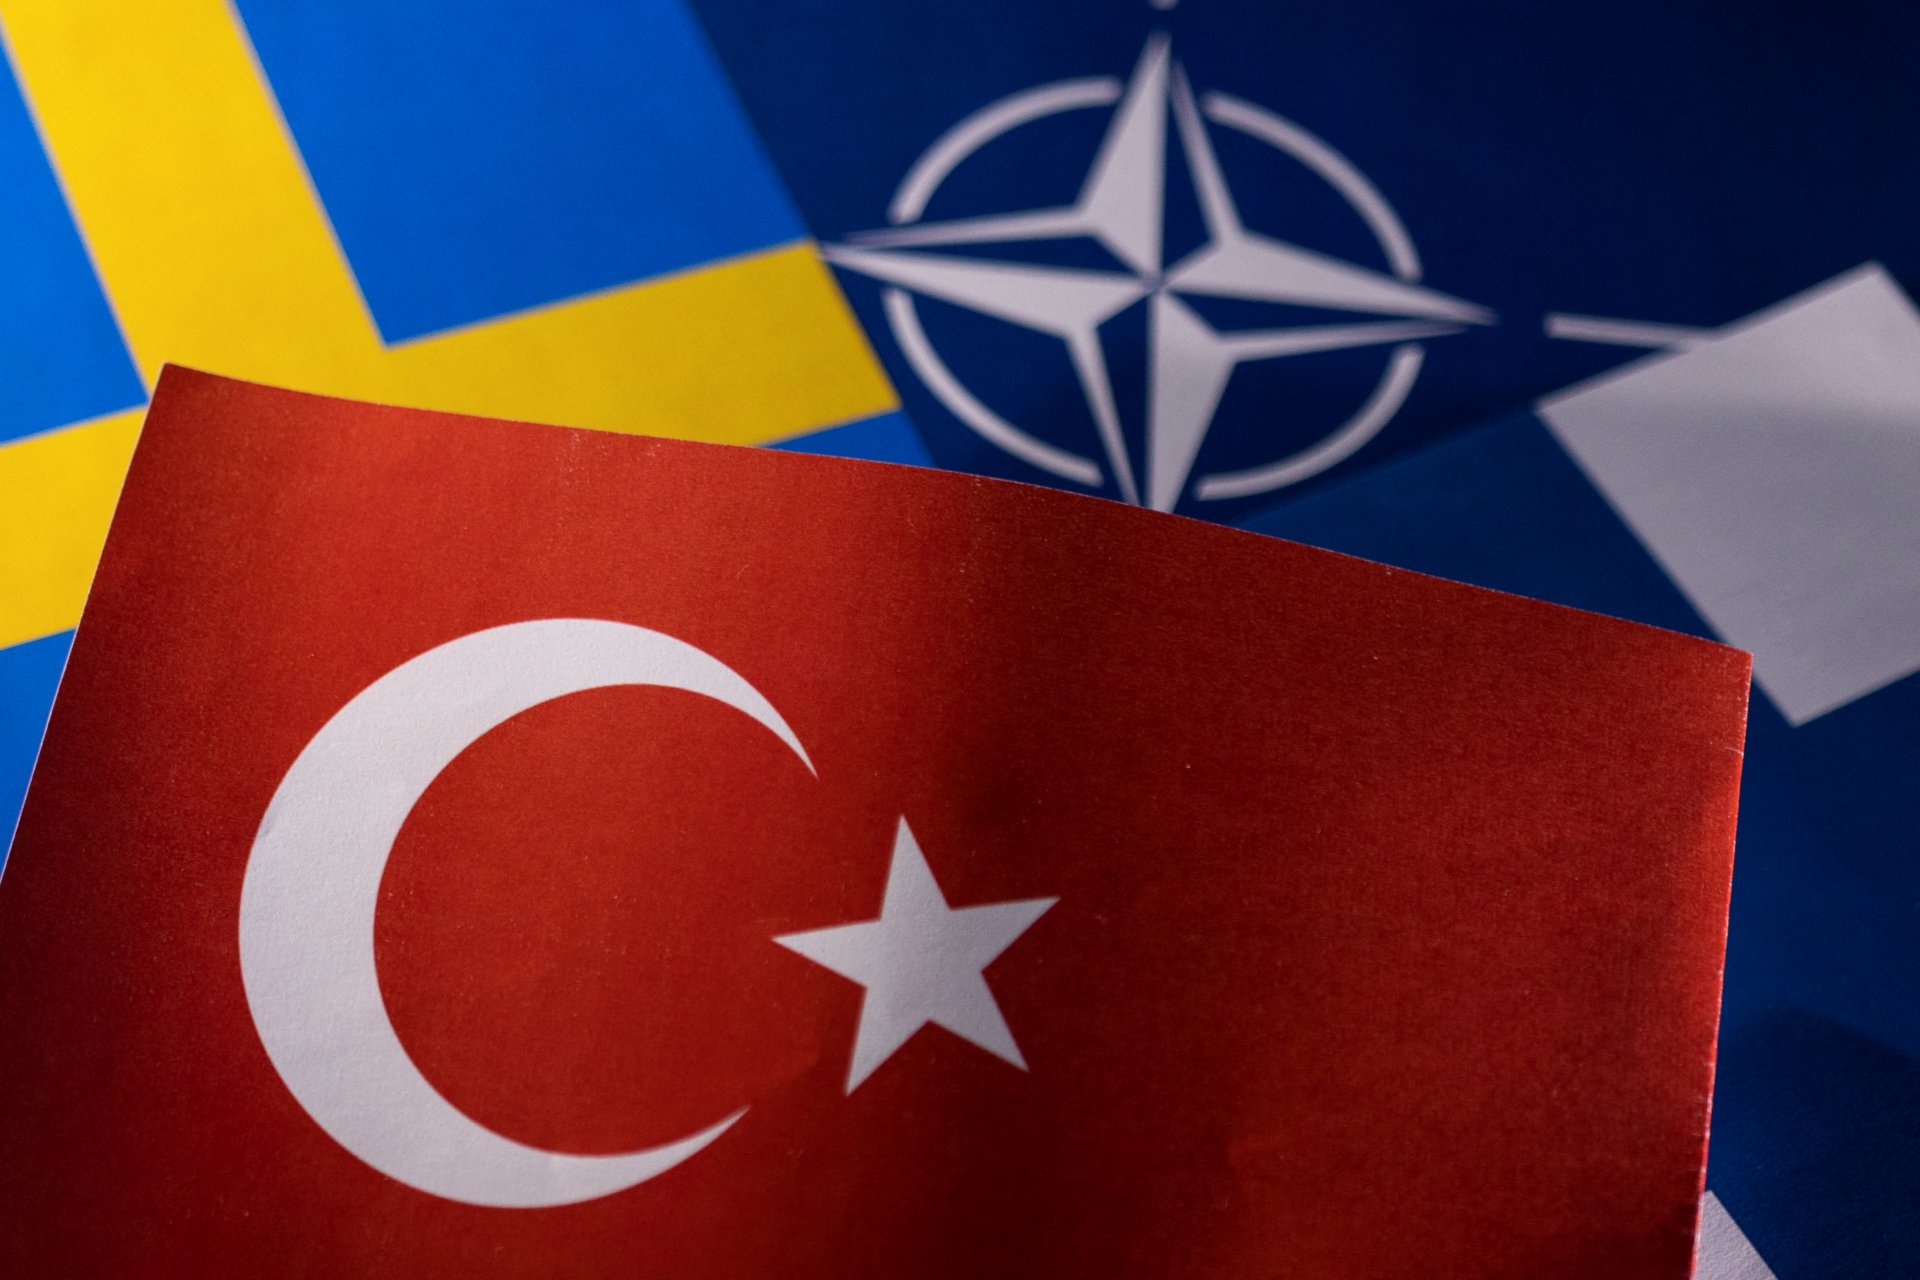 Турк улсын эрх баригчид Финланд, Шведтэй НАТО-д элсэх асуудлаар хэлэлцээ хийхээс татгалзжээ